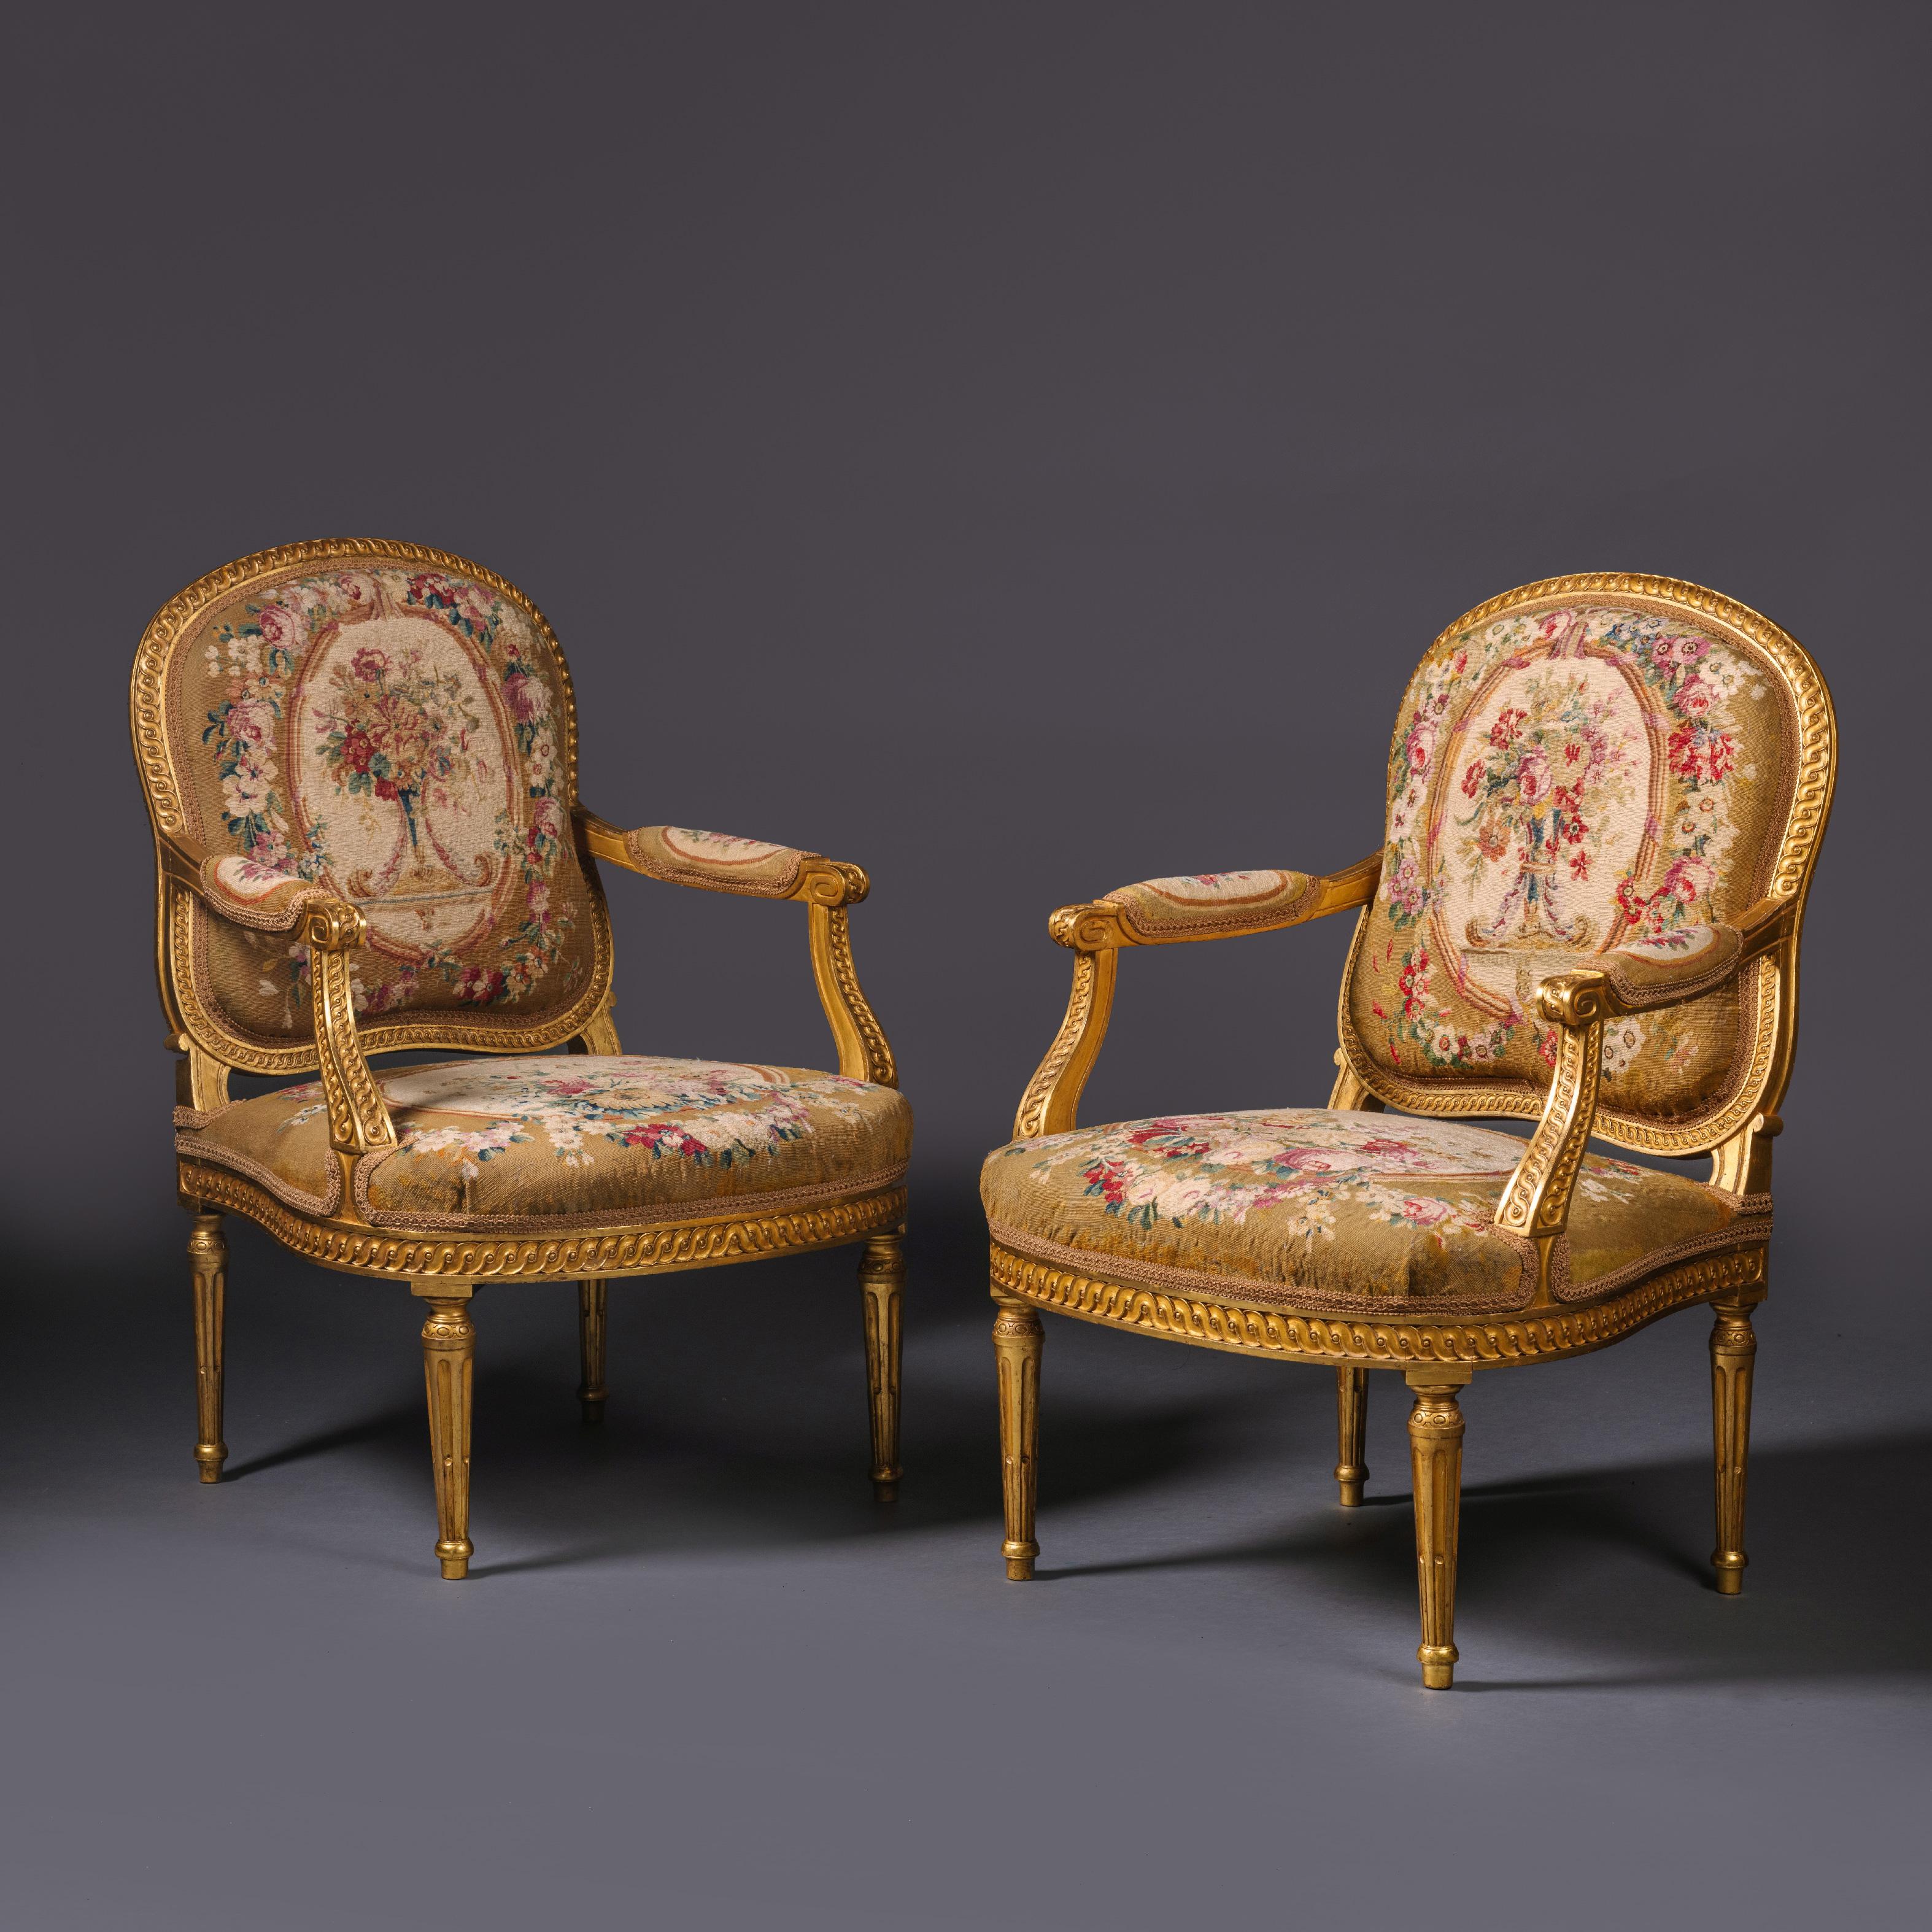 Paire de fauteuils de style Louis XVI en bois doré et tapisserie.

La tapisserie est du 18ème siècle et attribuée à la Manufacture de Beauvais. Les cadres sont finement sculptés avec des bandes guillochées. Le dossier arrondi est tapissé d'une